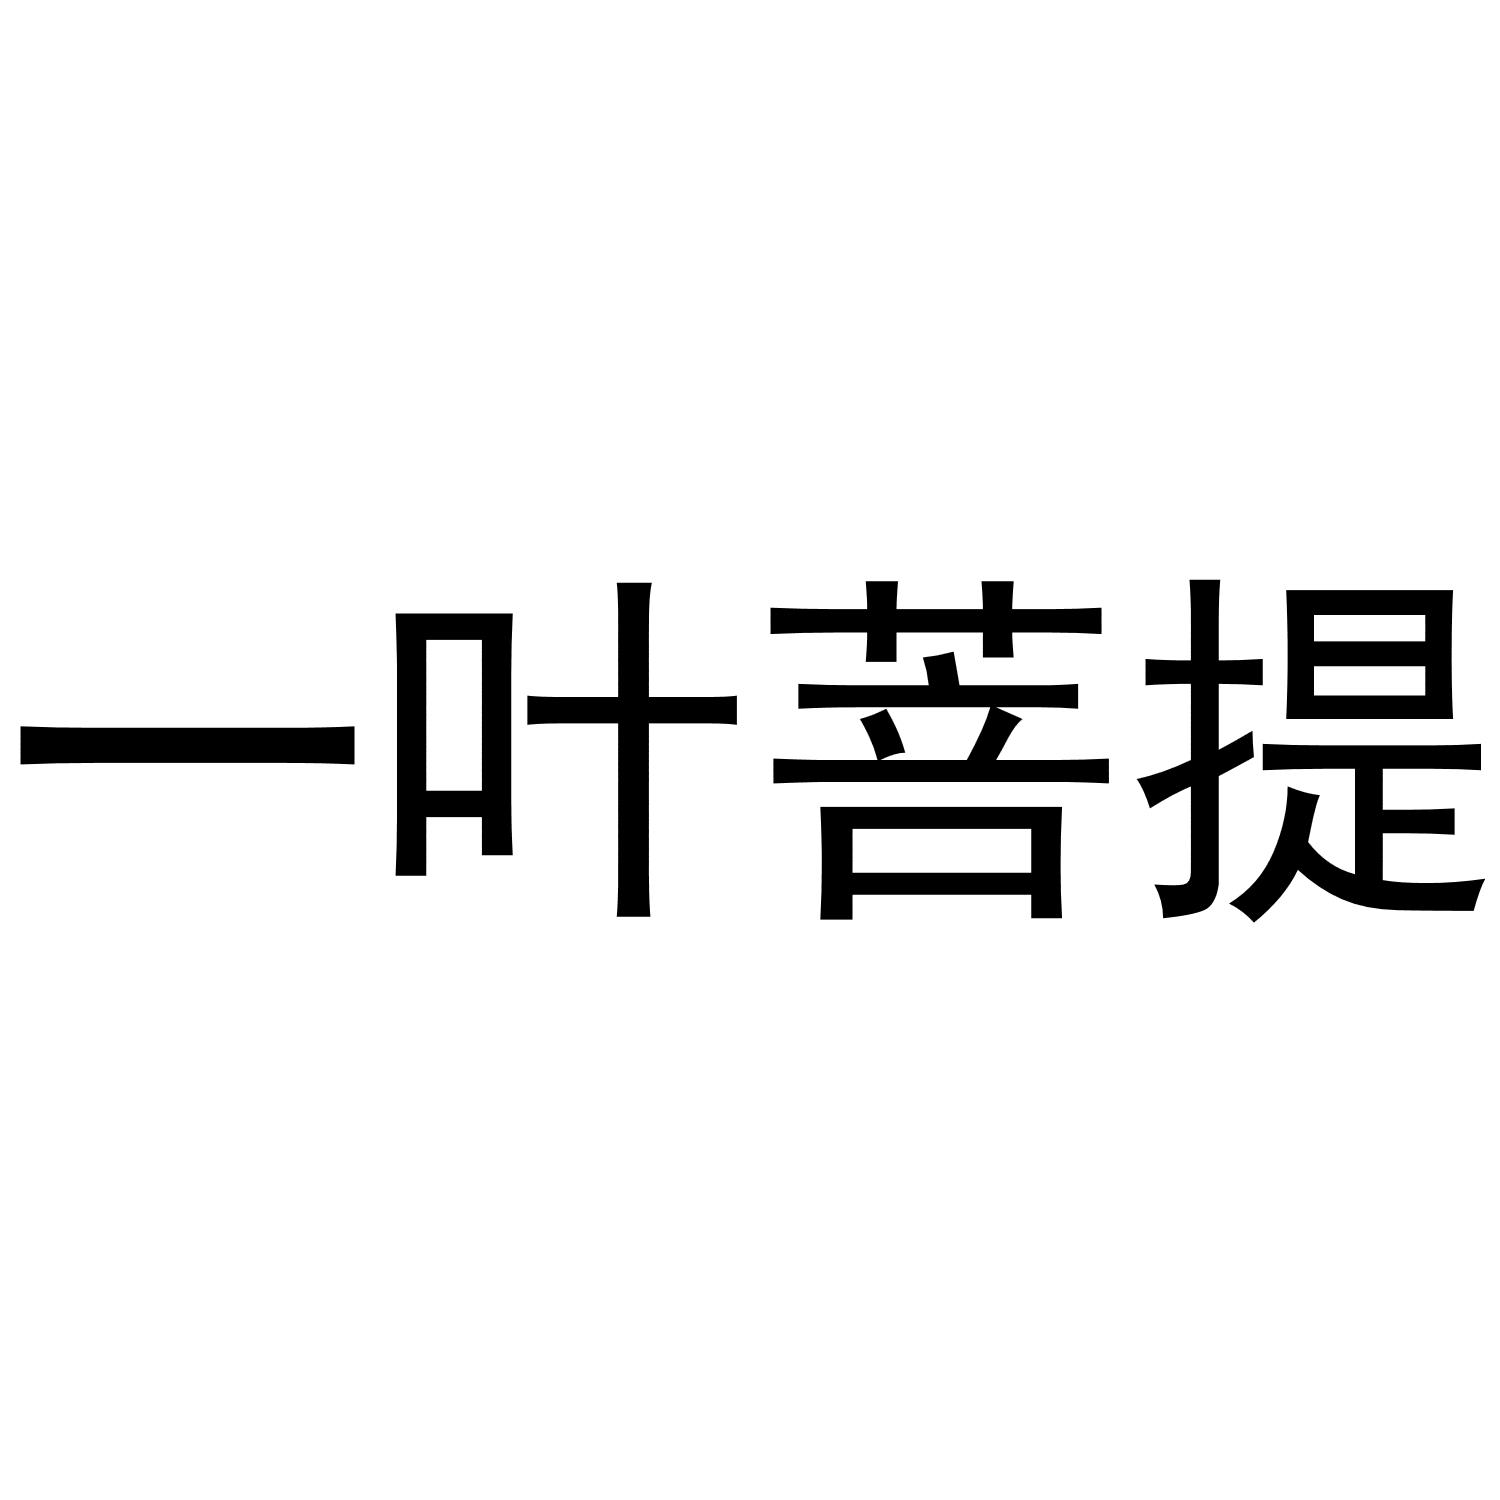 一叶子菩提叶logo图片